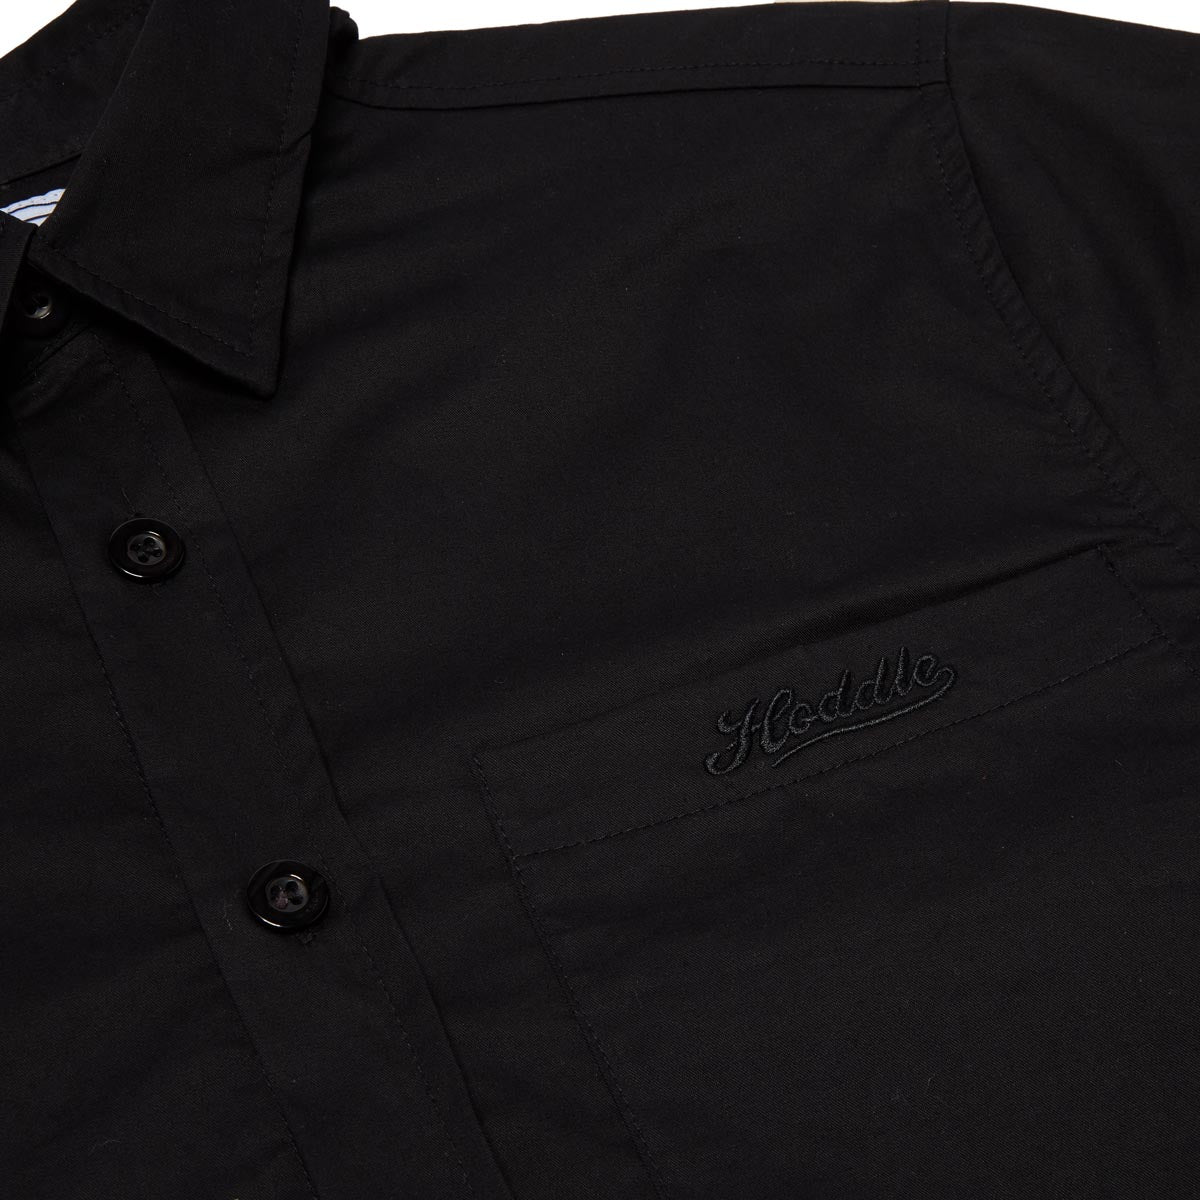 Hoddle Cheval Shirt - Black image 4